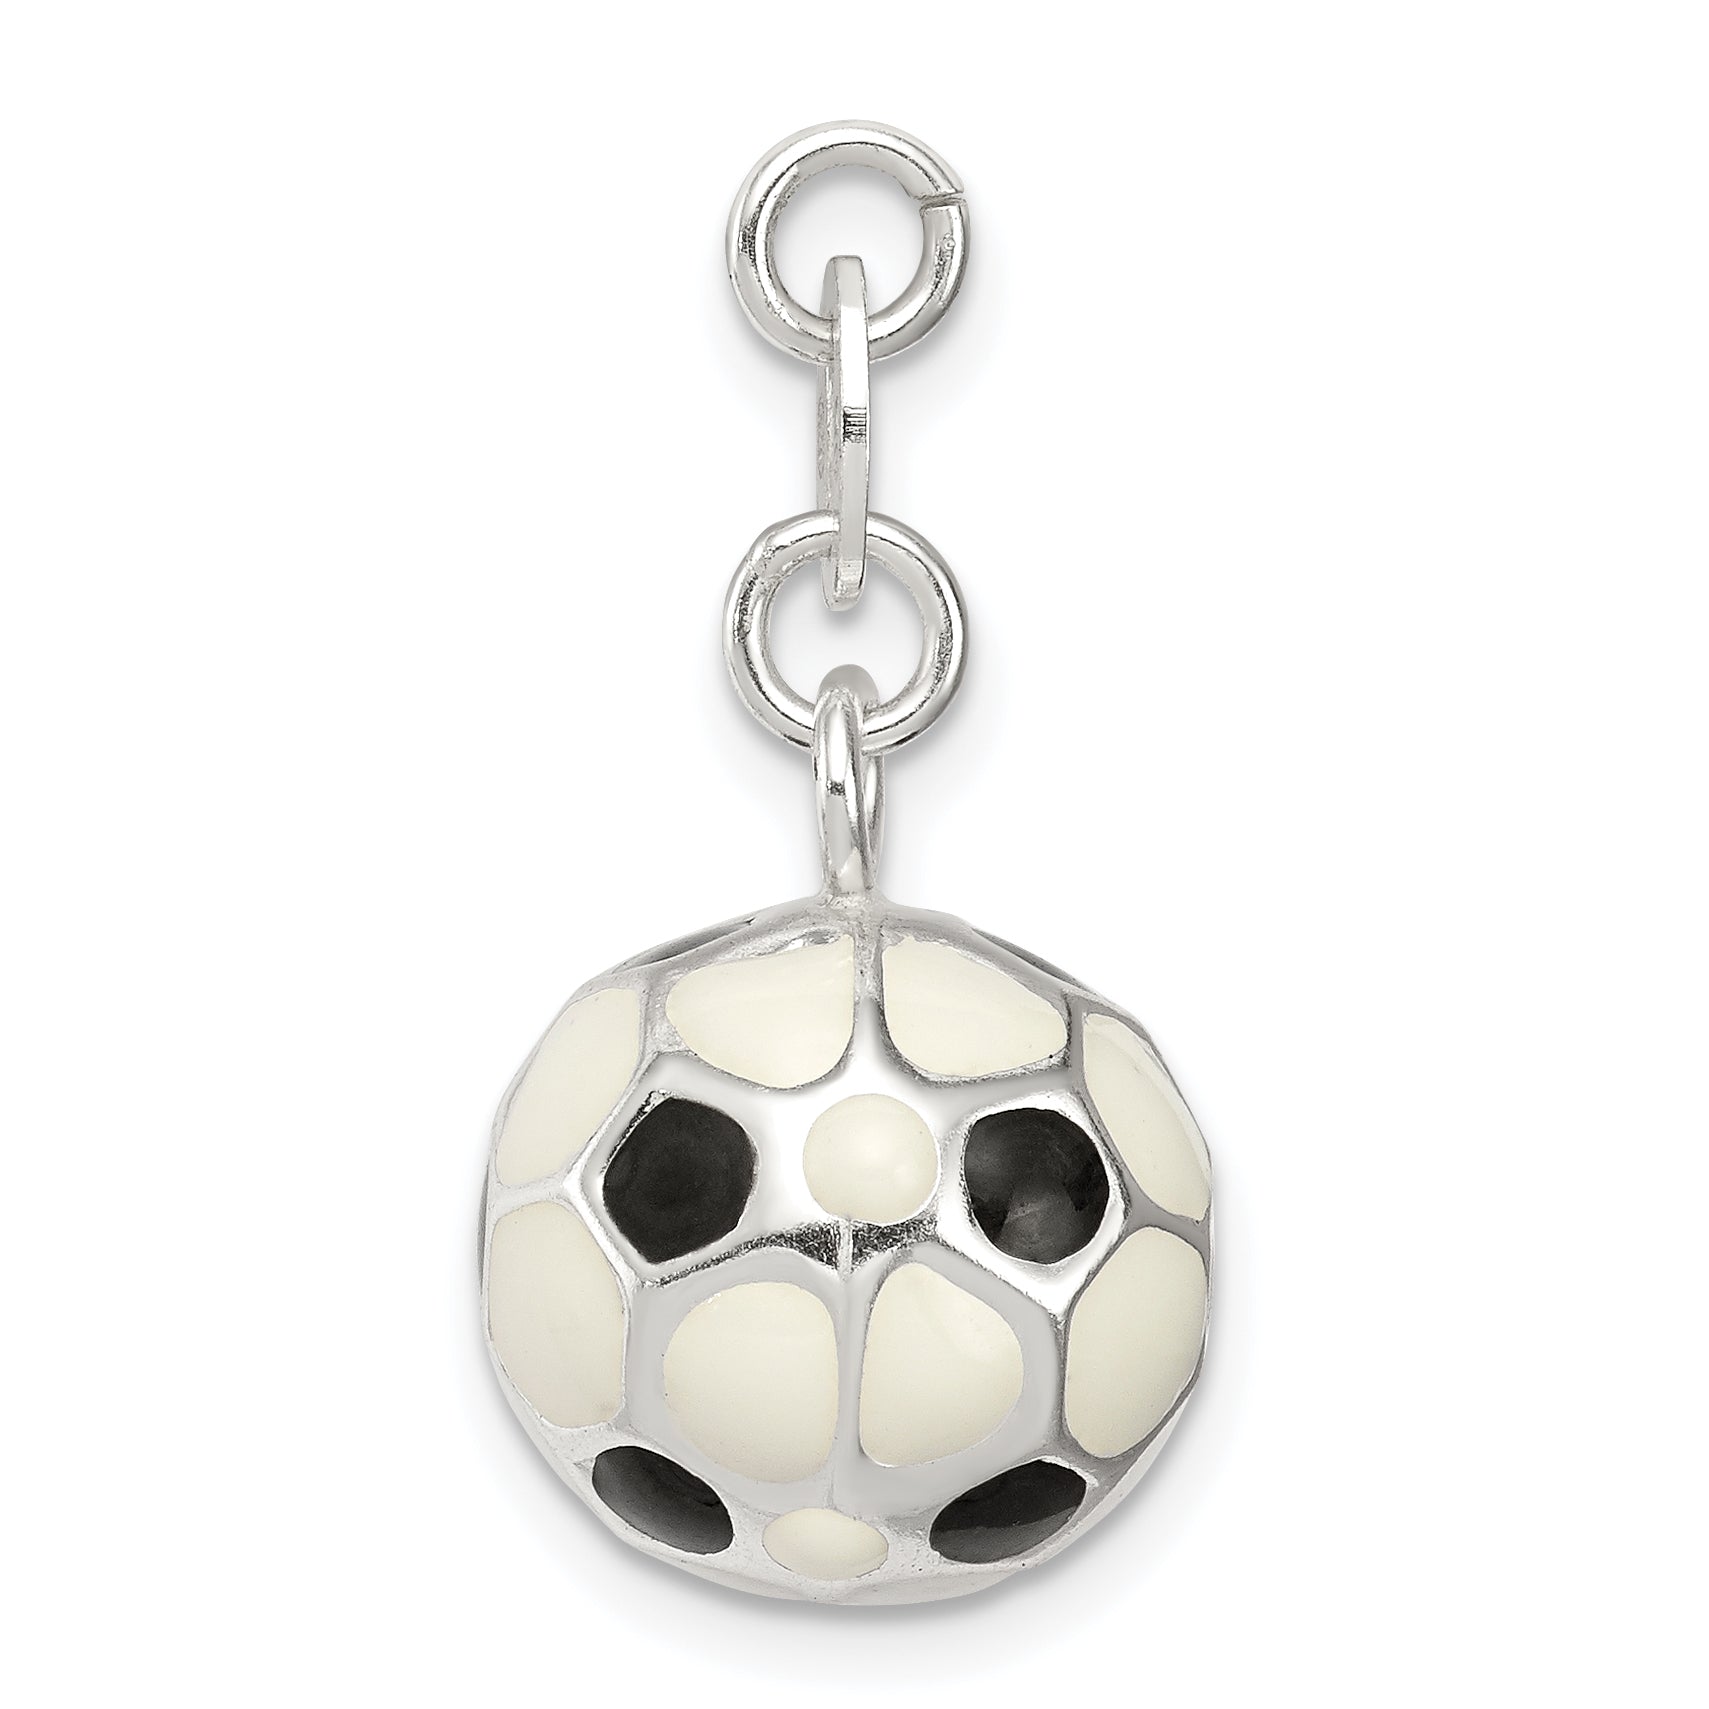 Sterling Silver Enameled Soccer Ball Charm